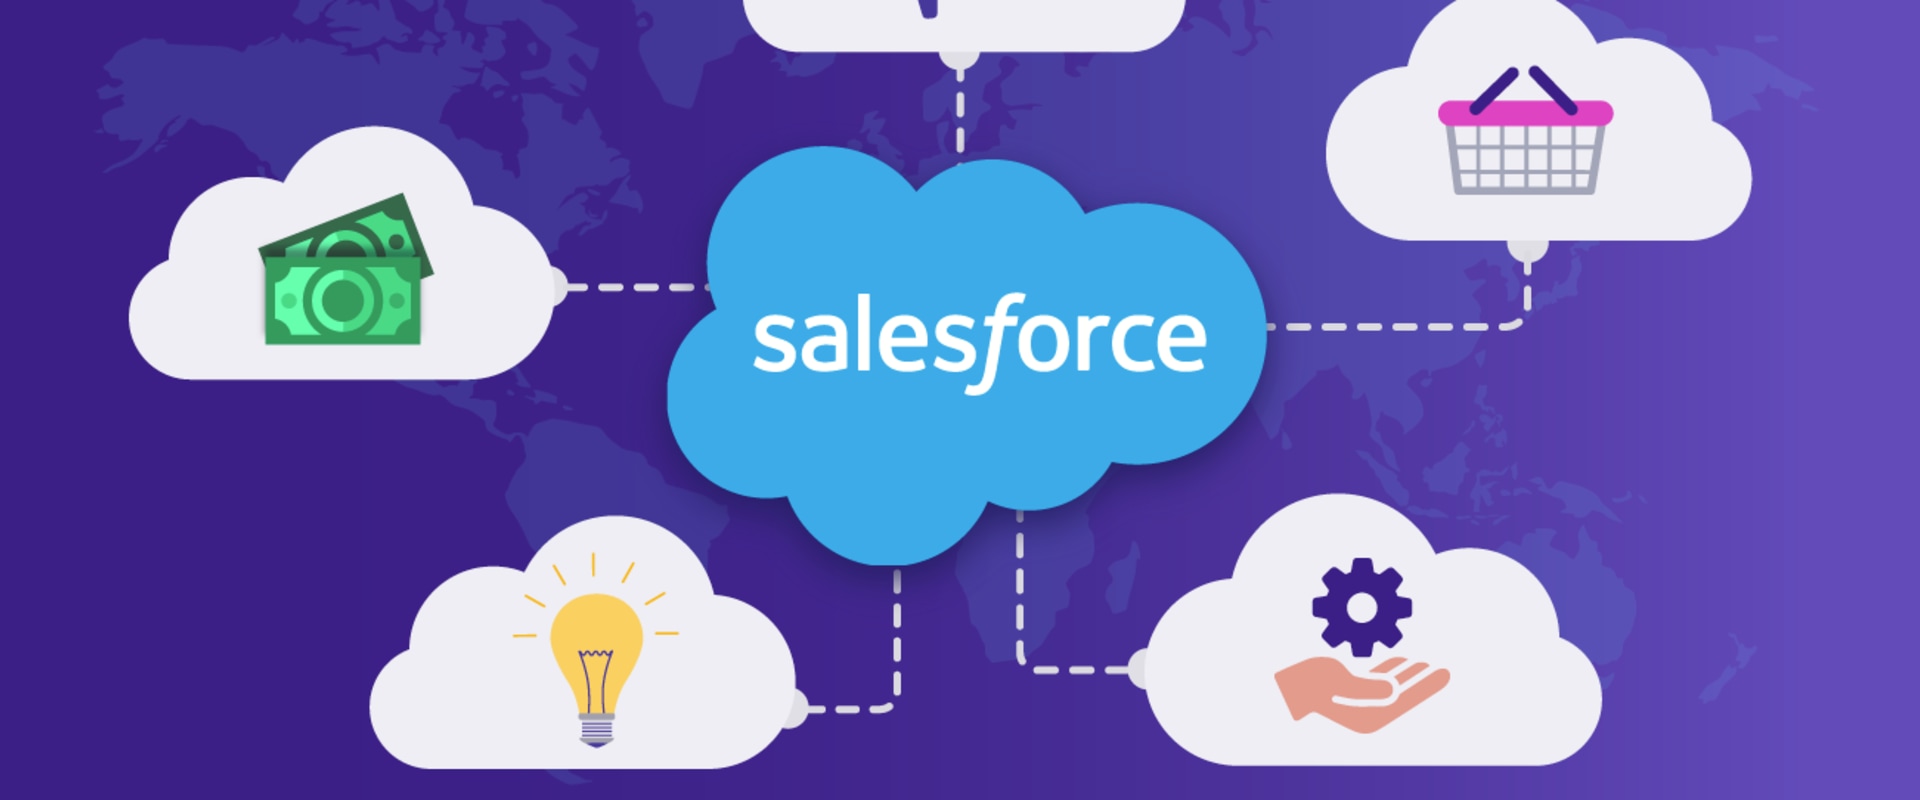 The Benefits of Salesforce Sales Cloud for Enterprises